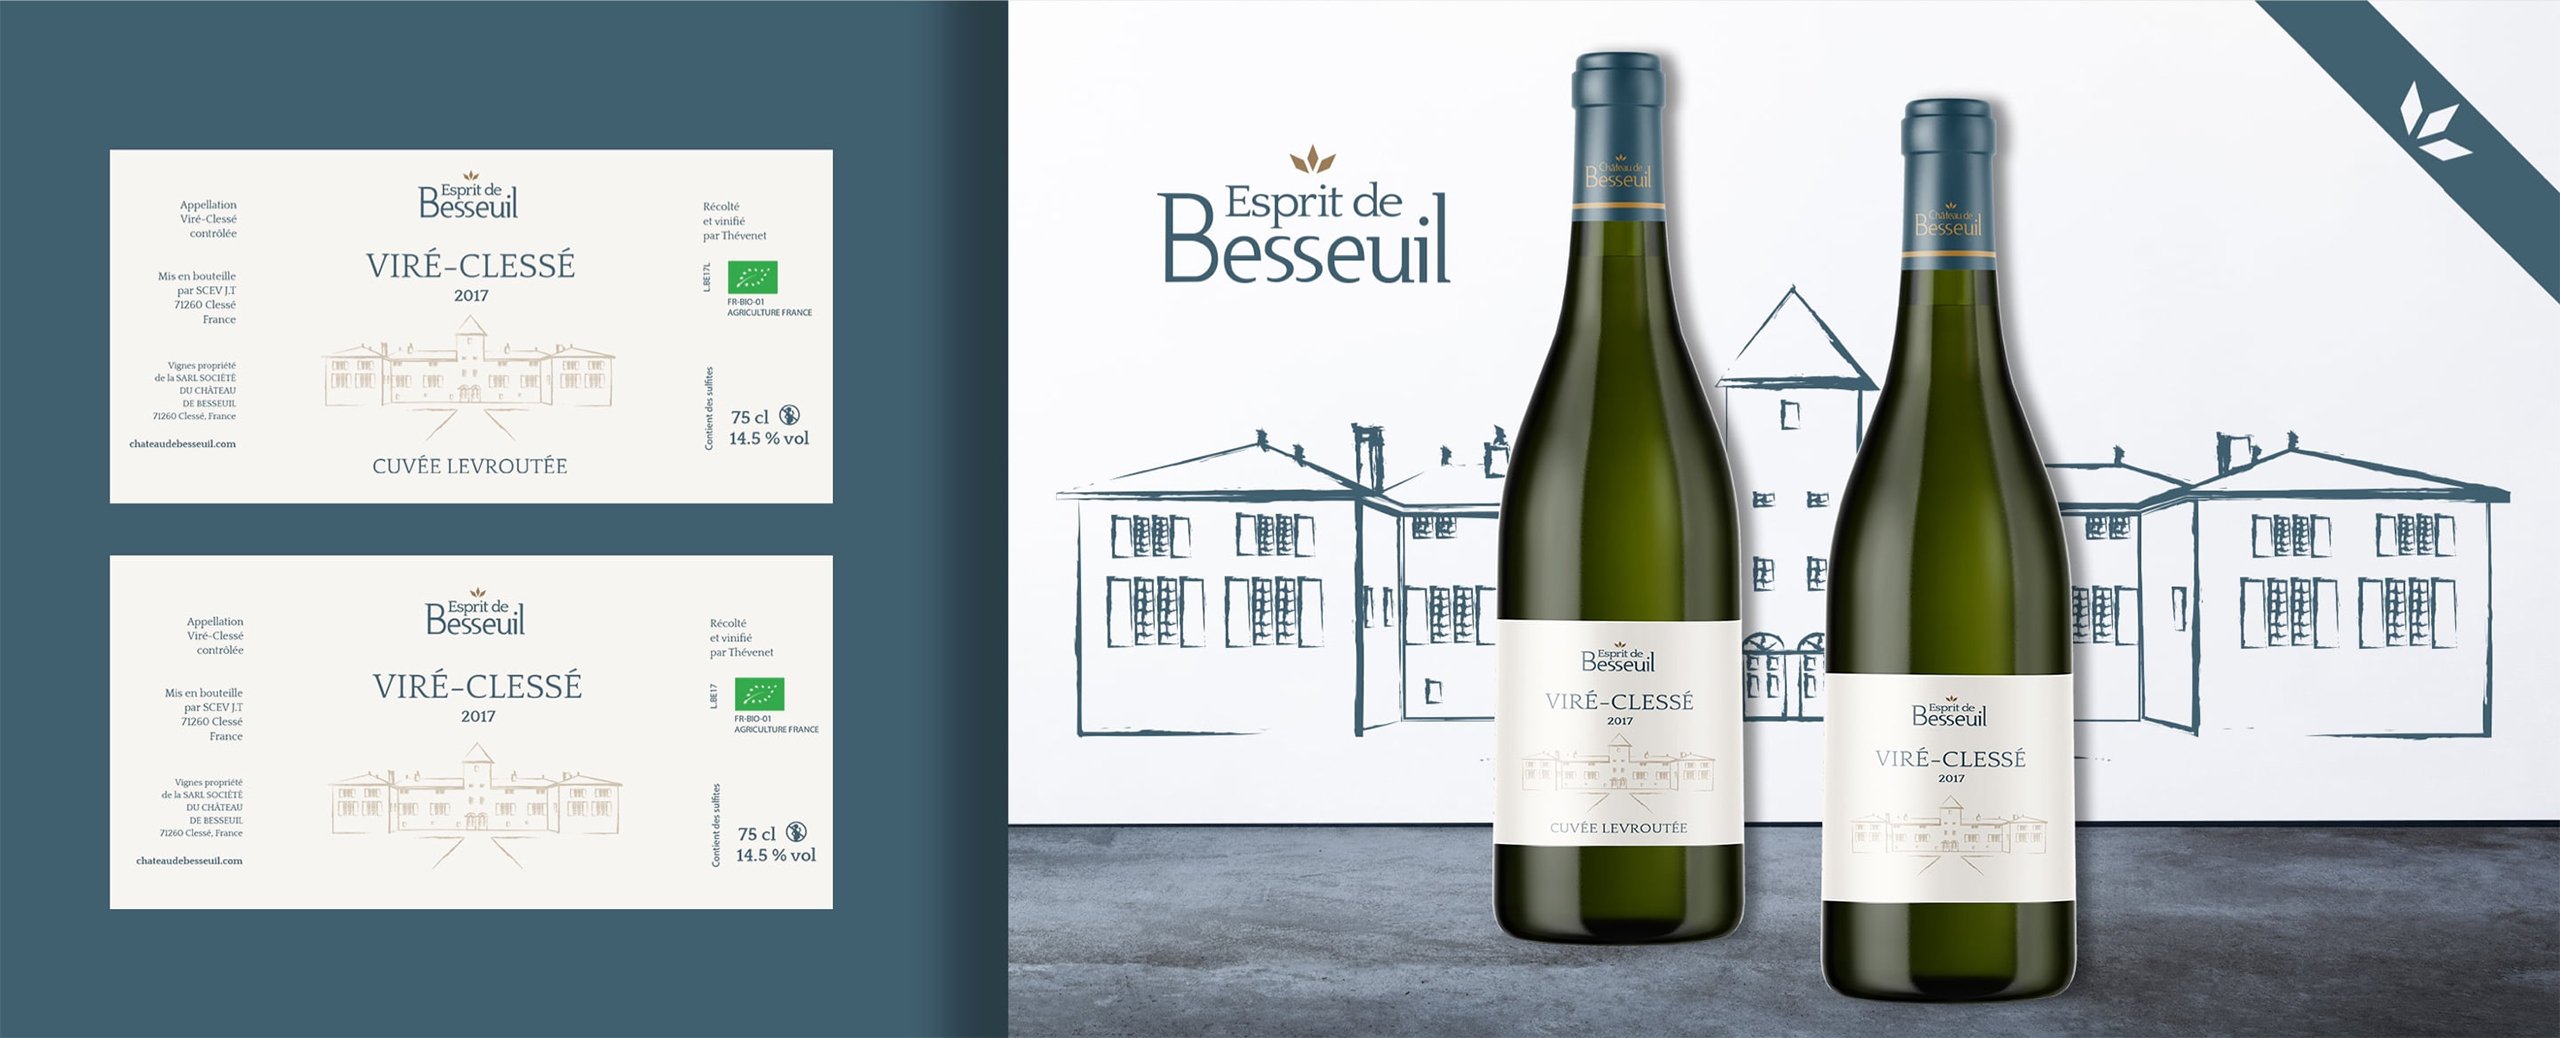 Habefast Study Case Chateau De Besseuil Design Wine Bottle Label Esprit De Besseuil Vire Clesse 2017